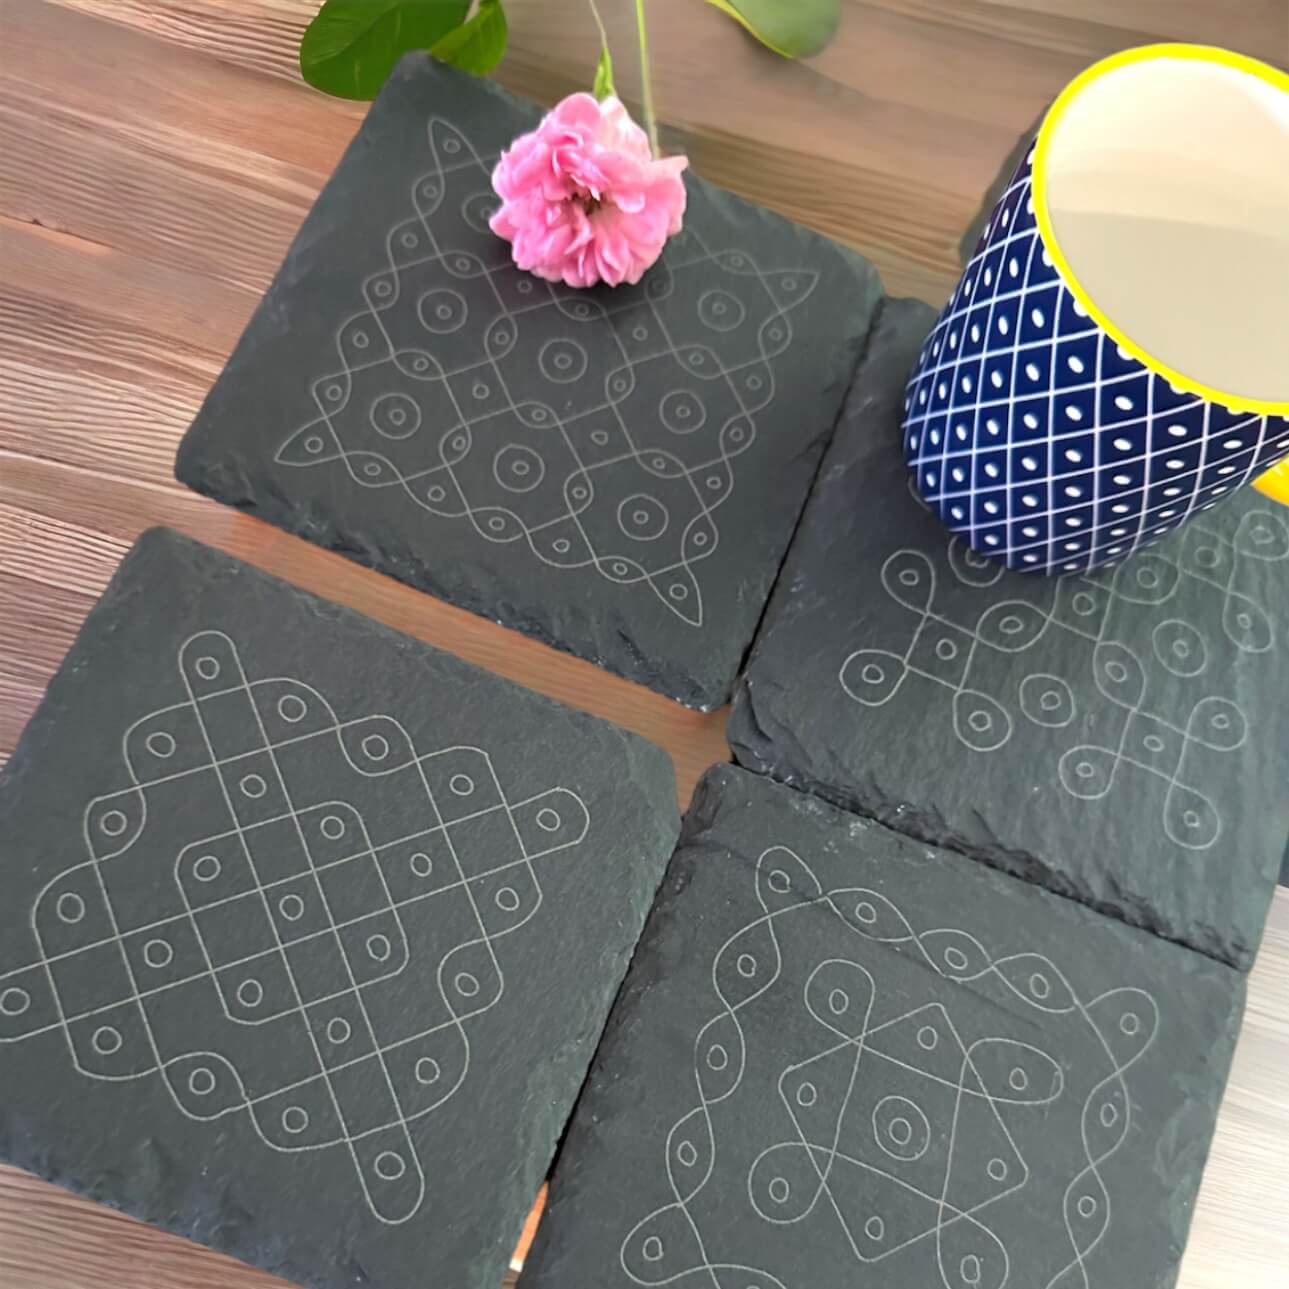 Slate Coasters with Kolam Art design Tinted Heritage